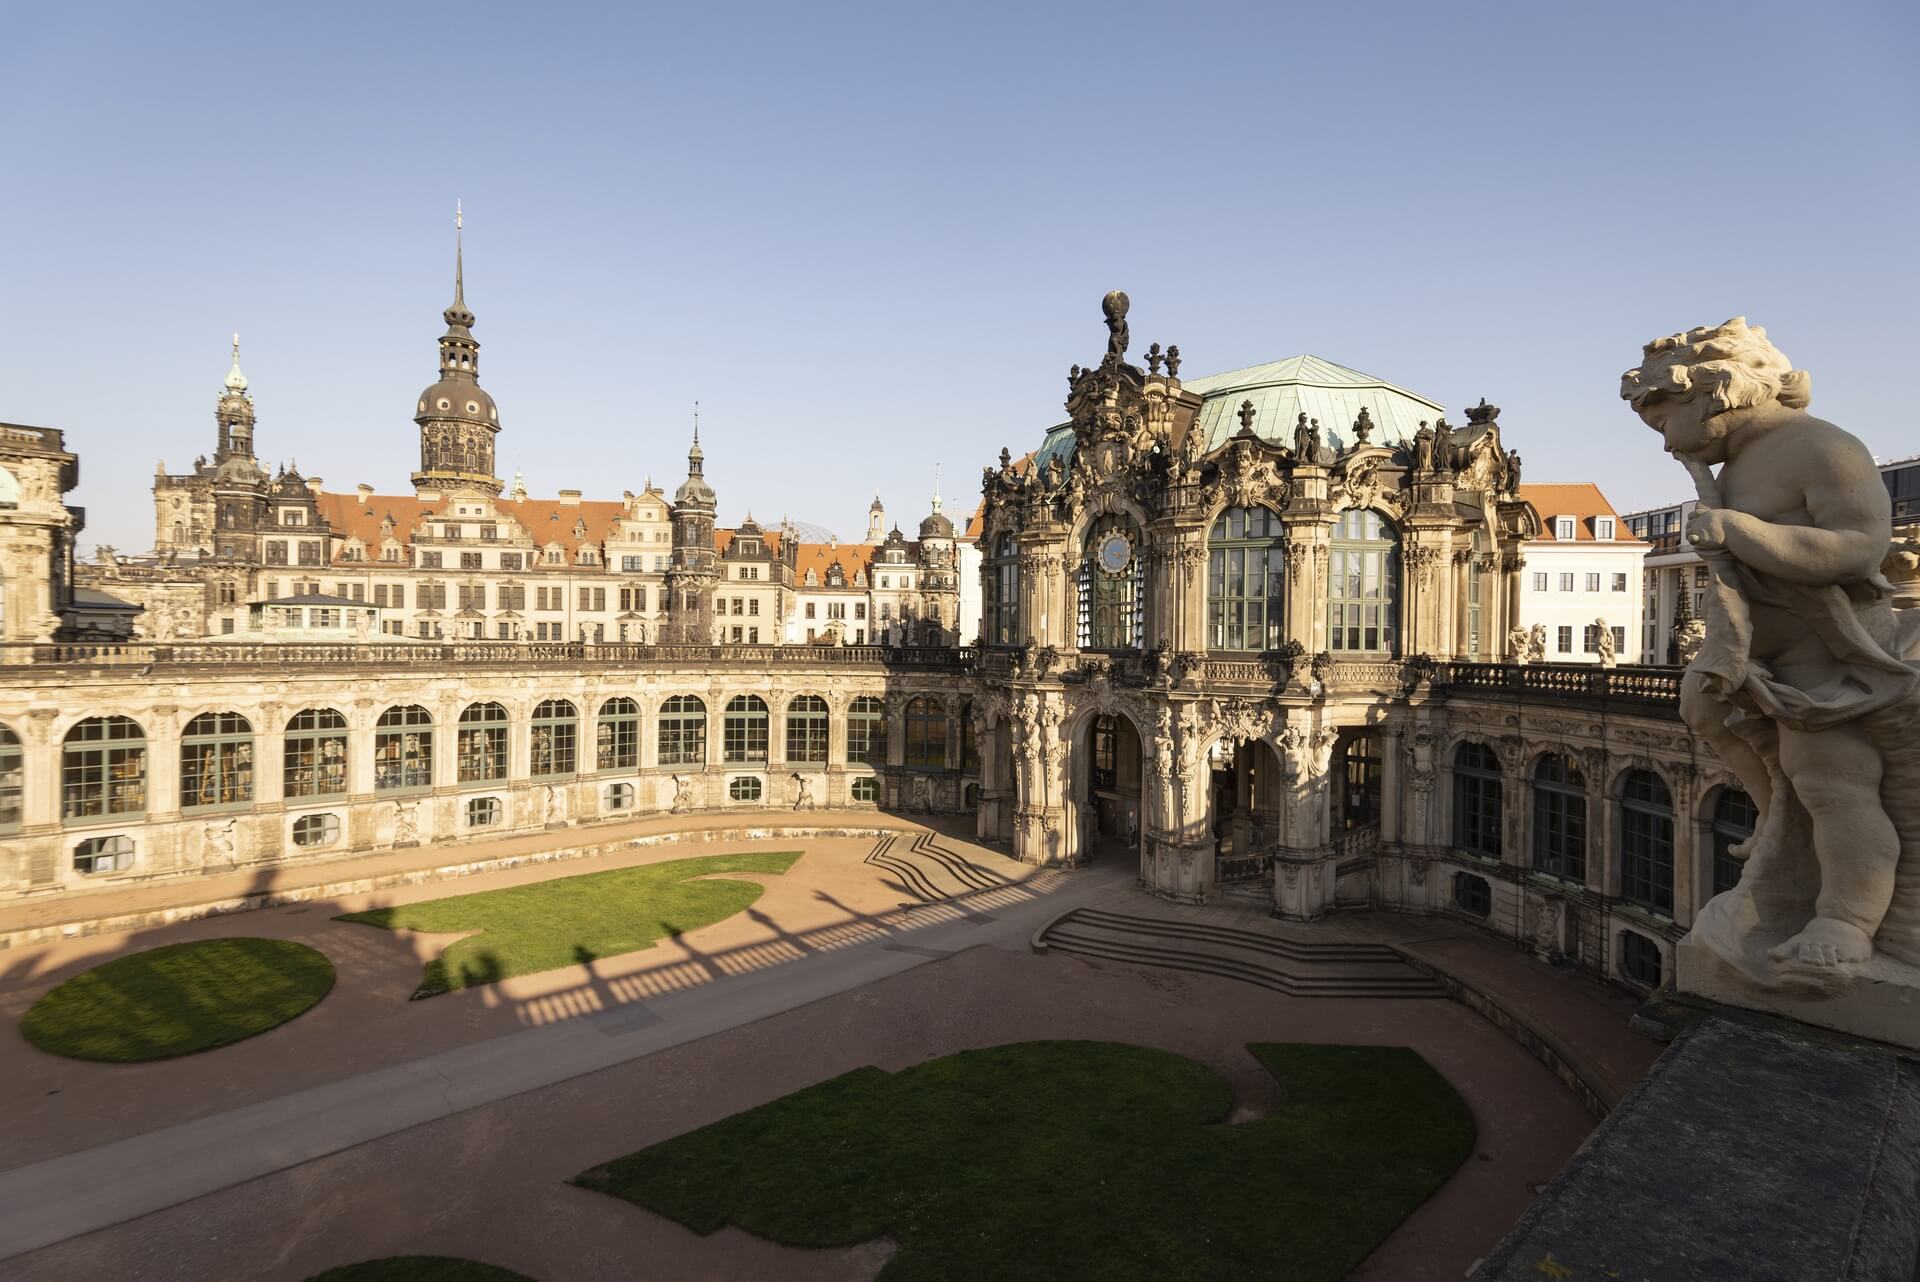 Dresden: Zwinger, Frühjahr 2020, Eindrücke von der Ausgangsbeschränkung während der COVID-19 Pandemie